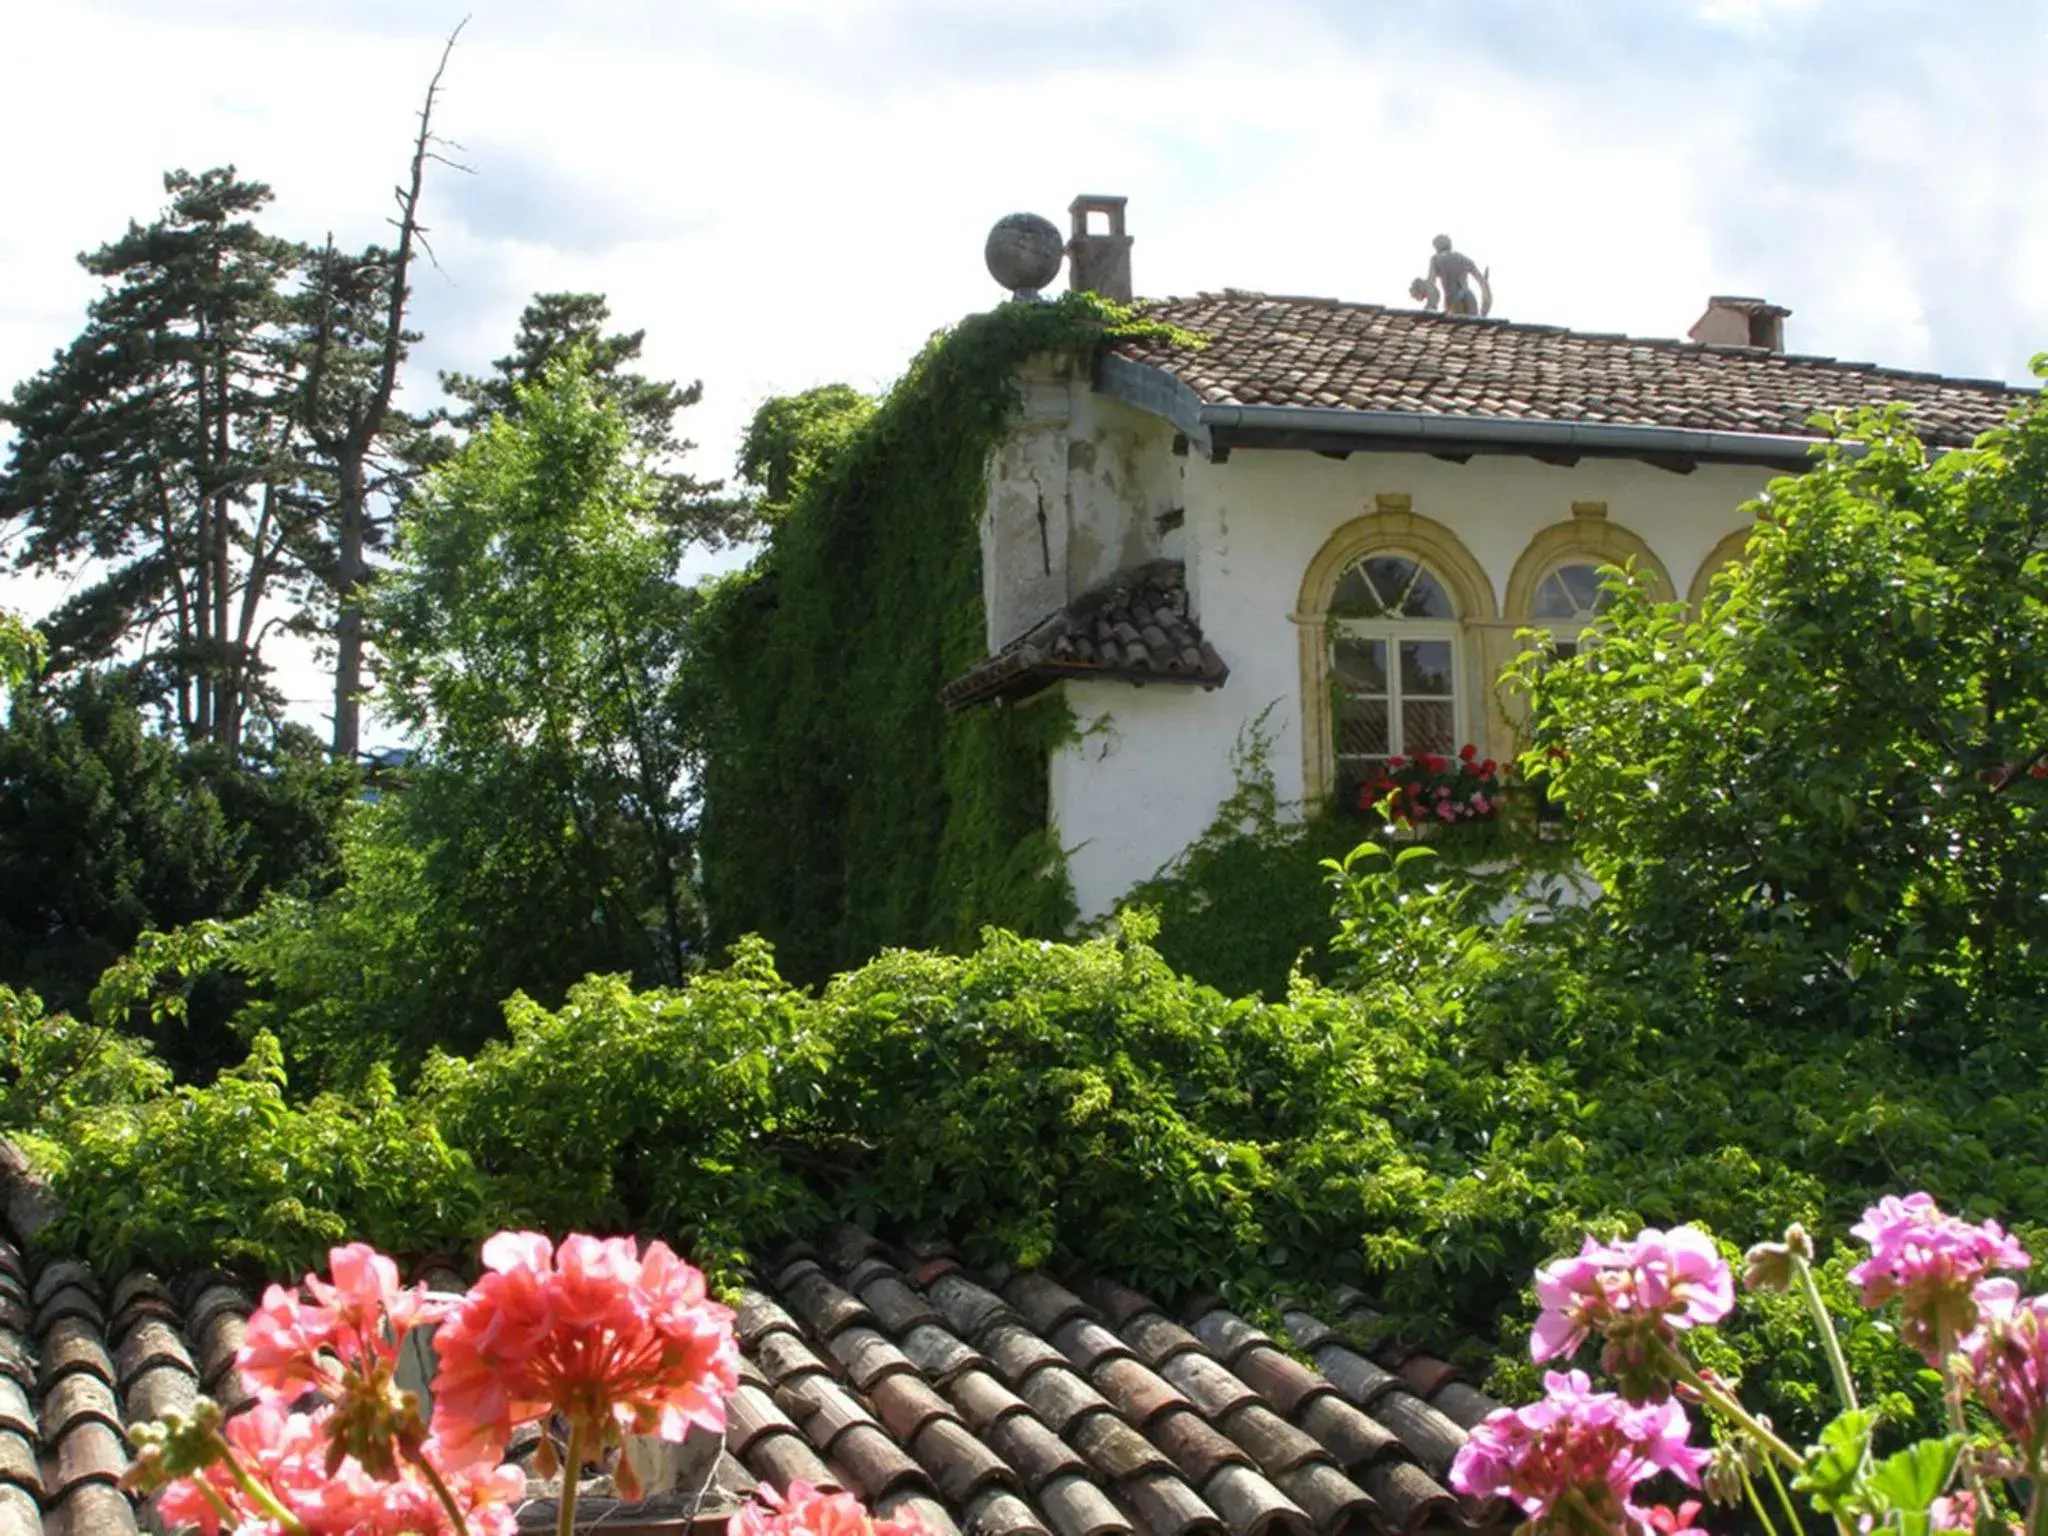 Garden, Property Building in Villa Bertagnolli - Locanda Del Bel Sorriso